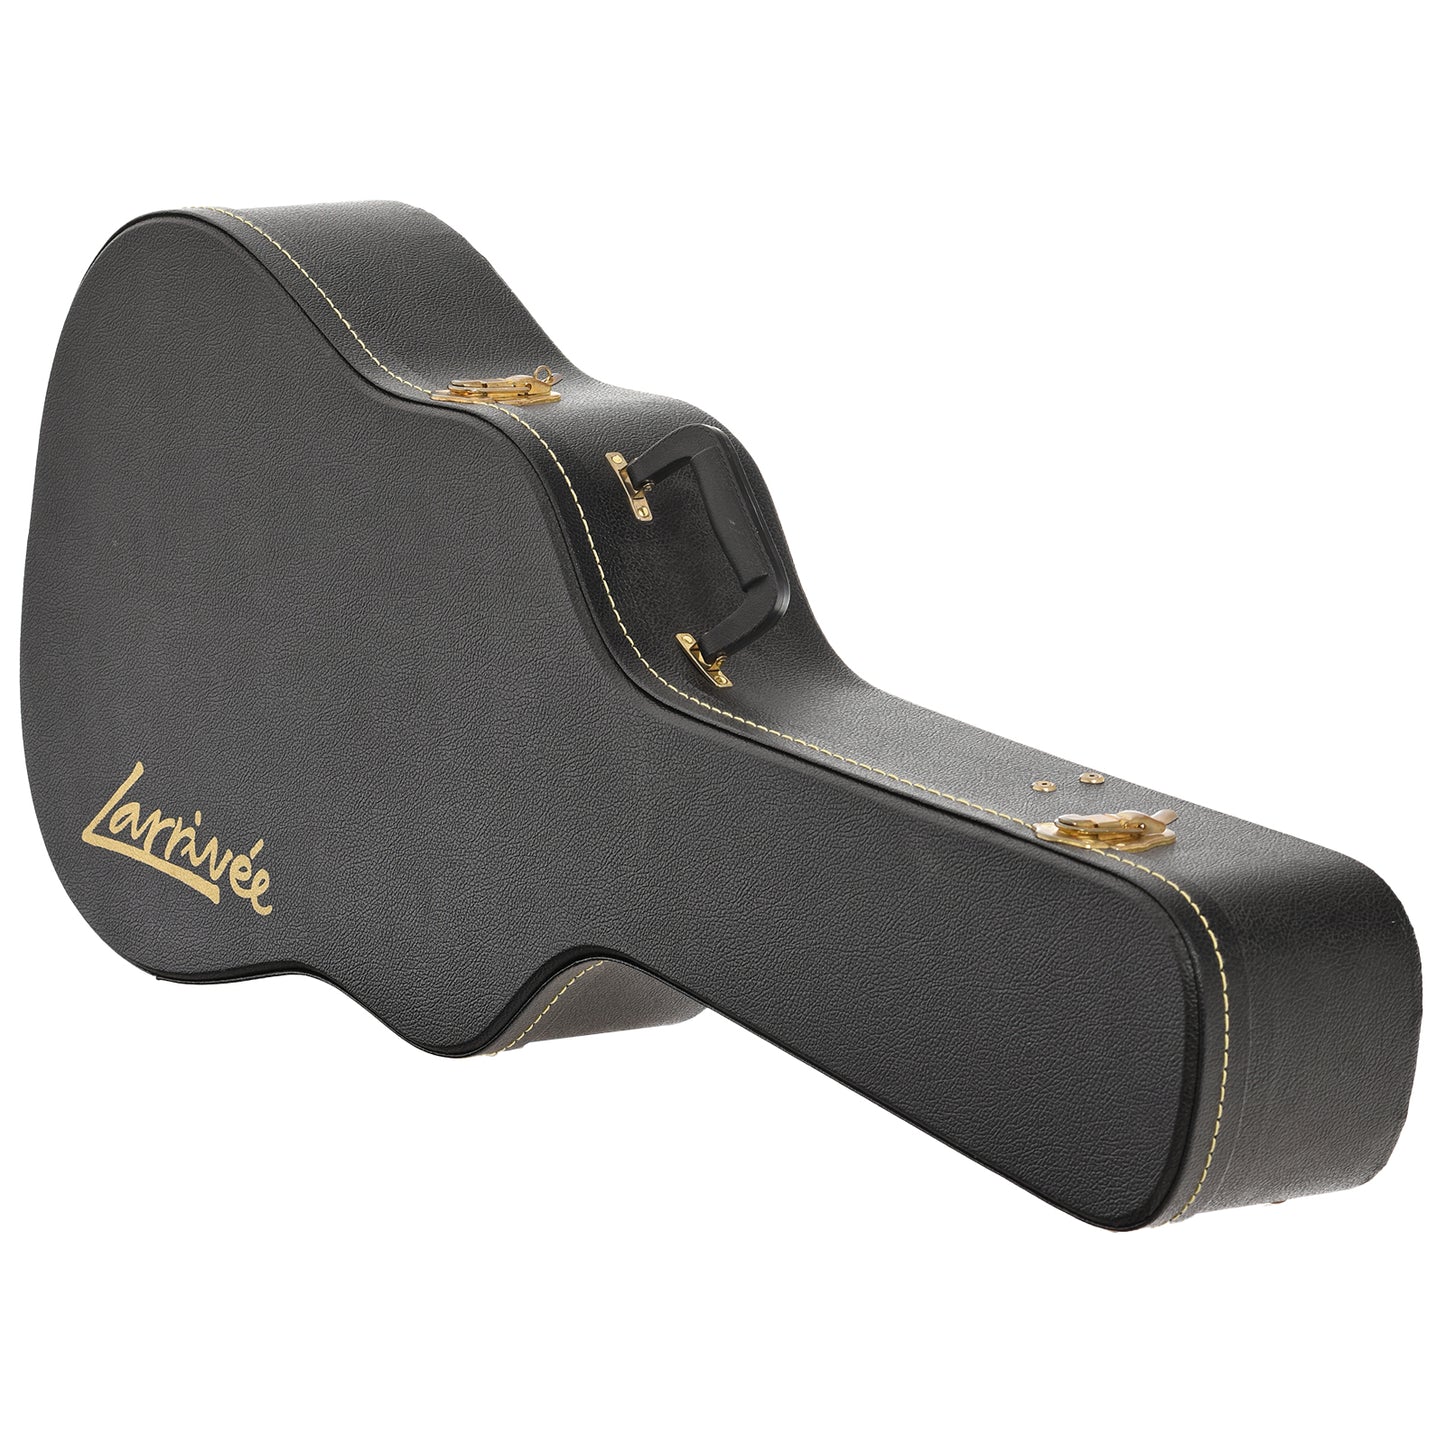 Case for Larrivee D-03R Acoustic